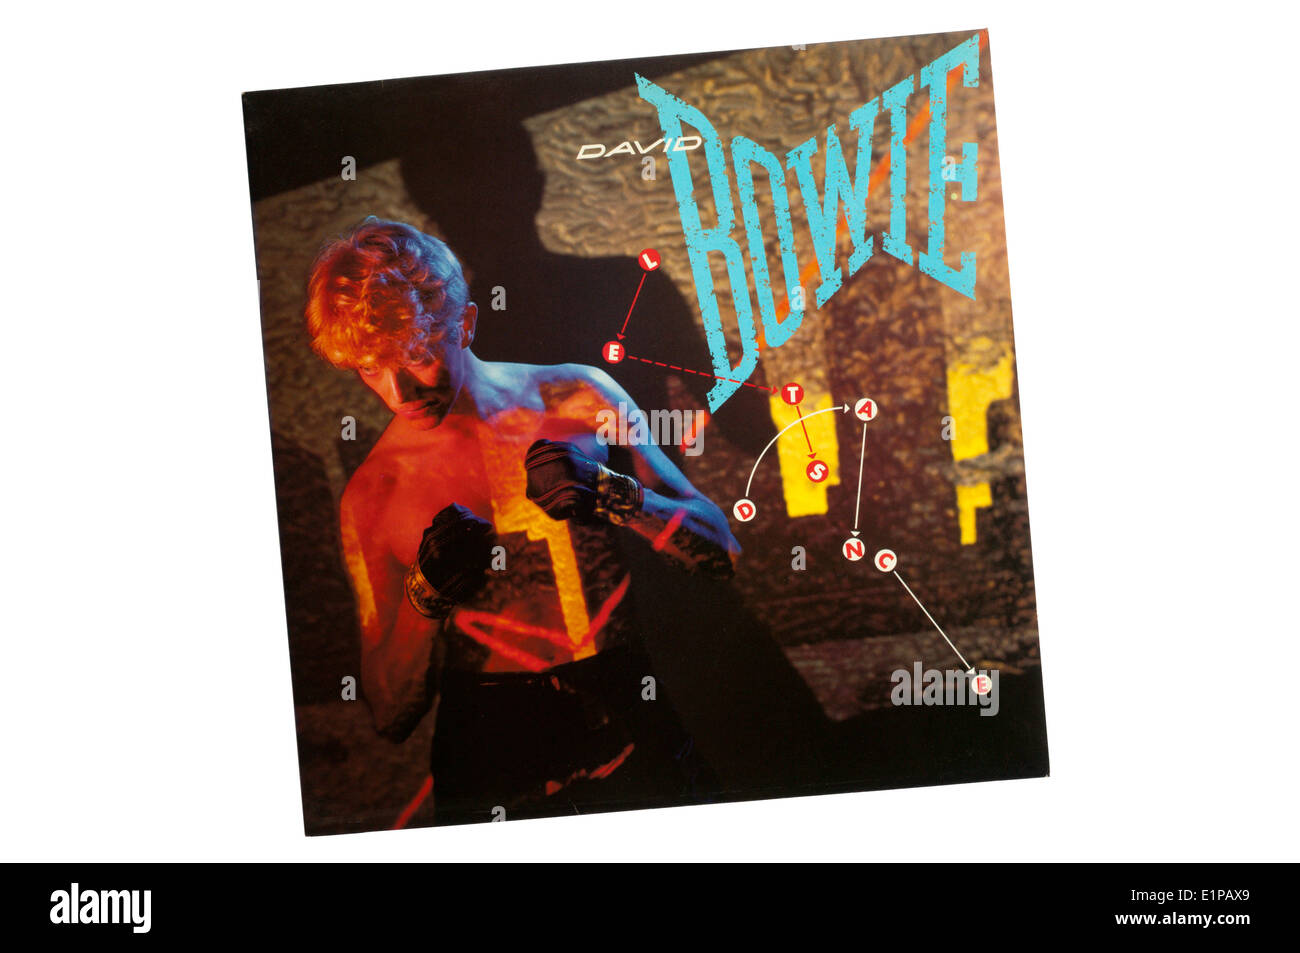 Facciamo la danza è il quindicesimo album in studio di David Bowie, rilasciato nel 1983. Foto Stock